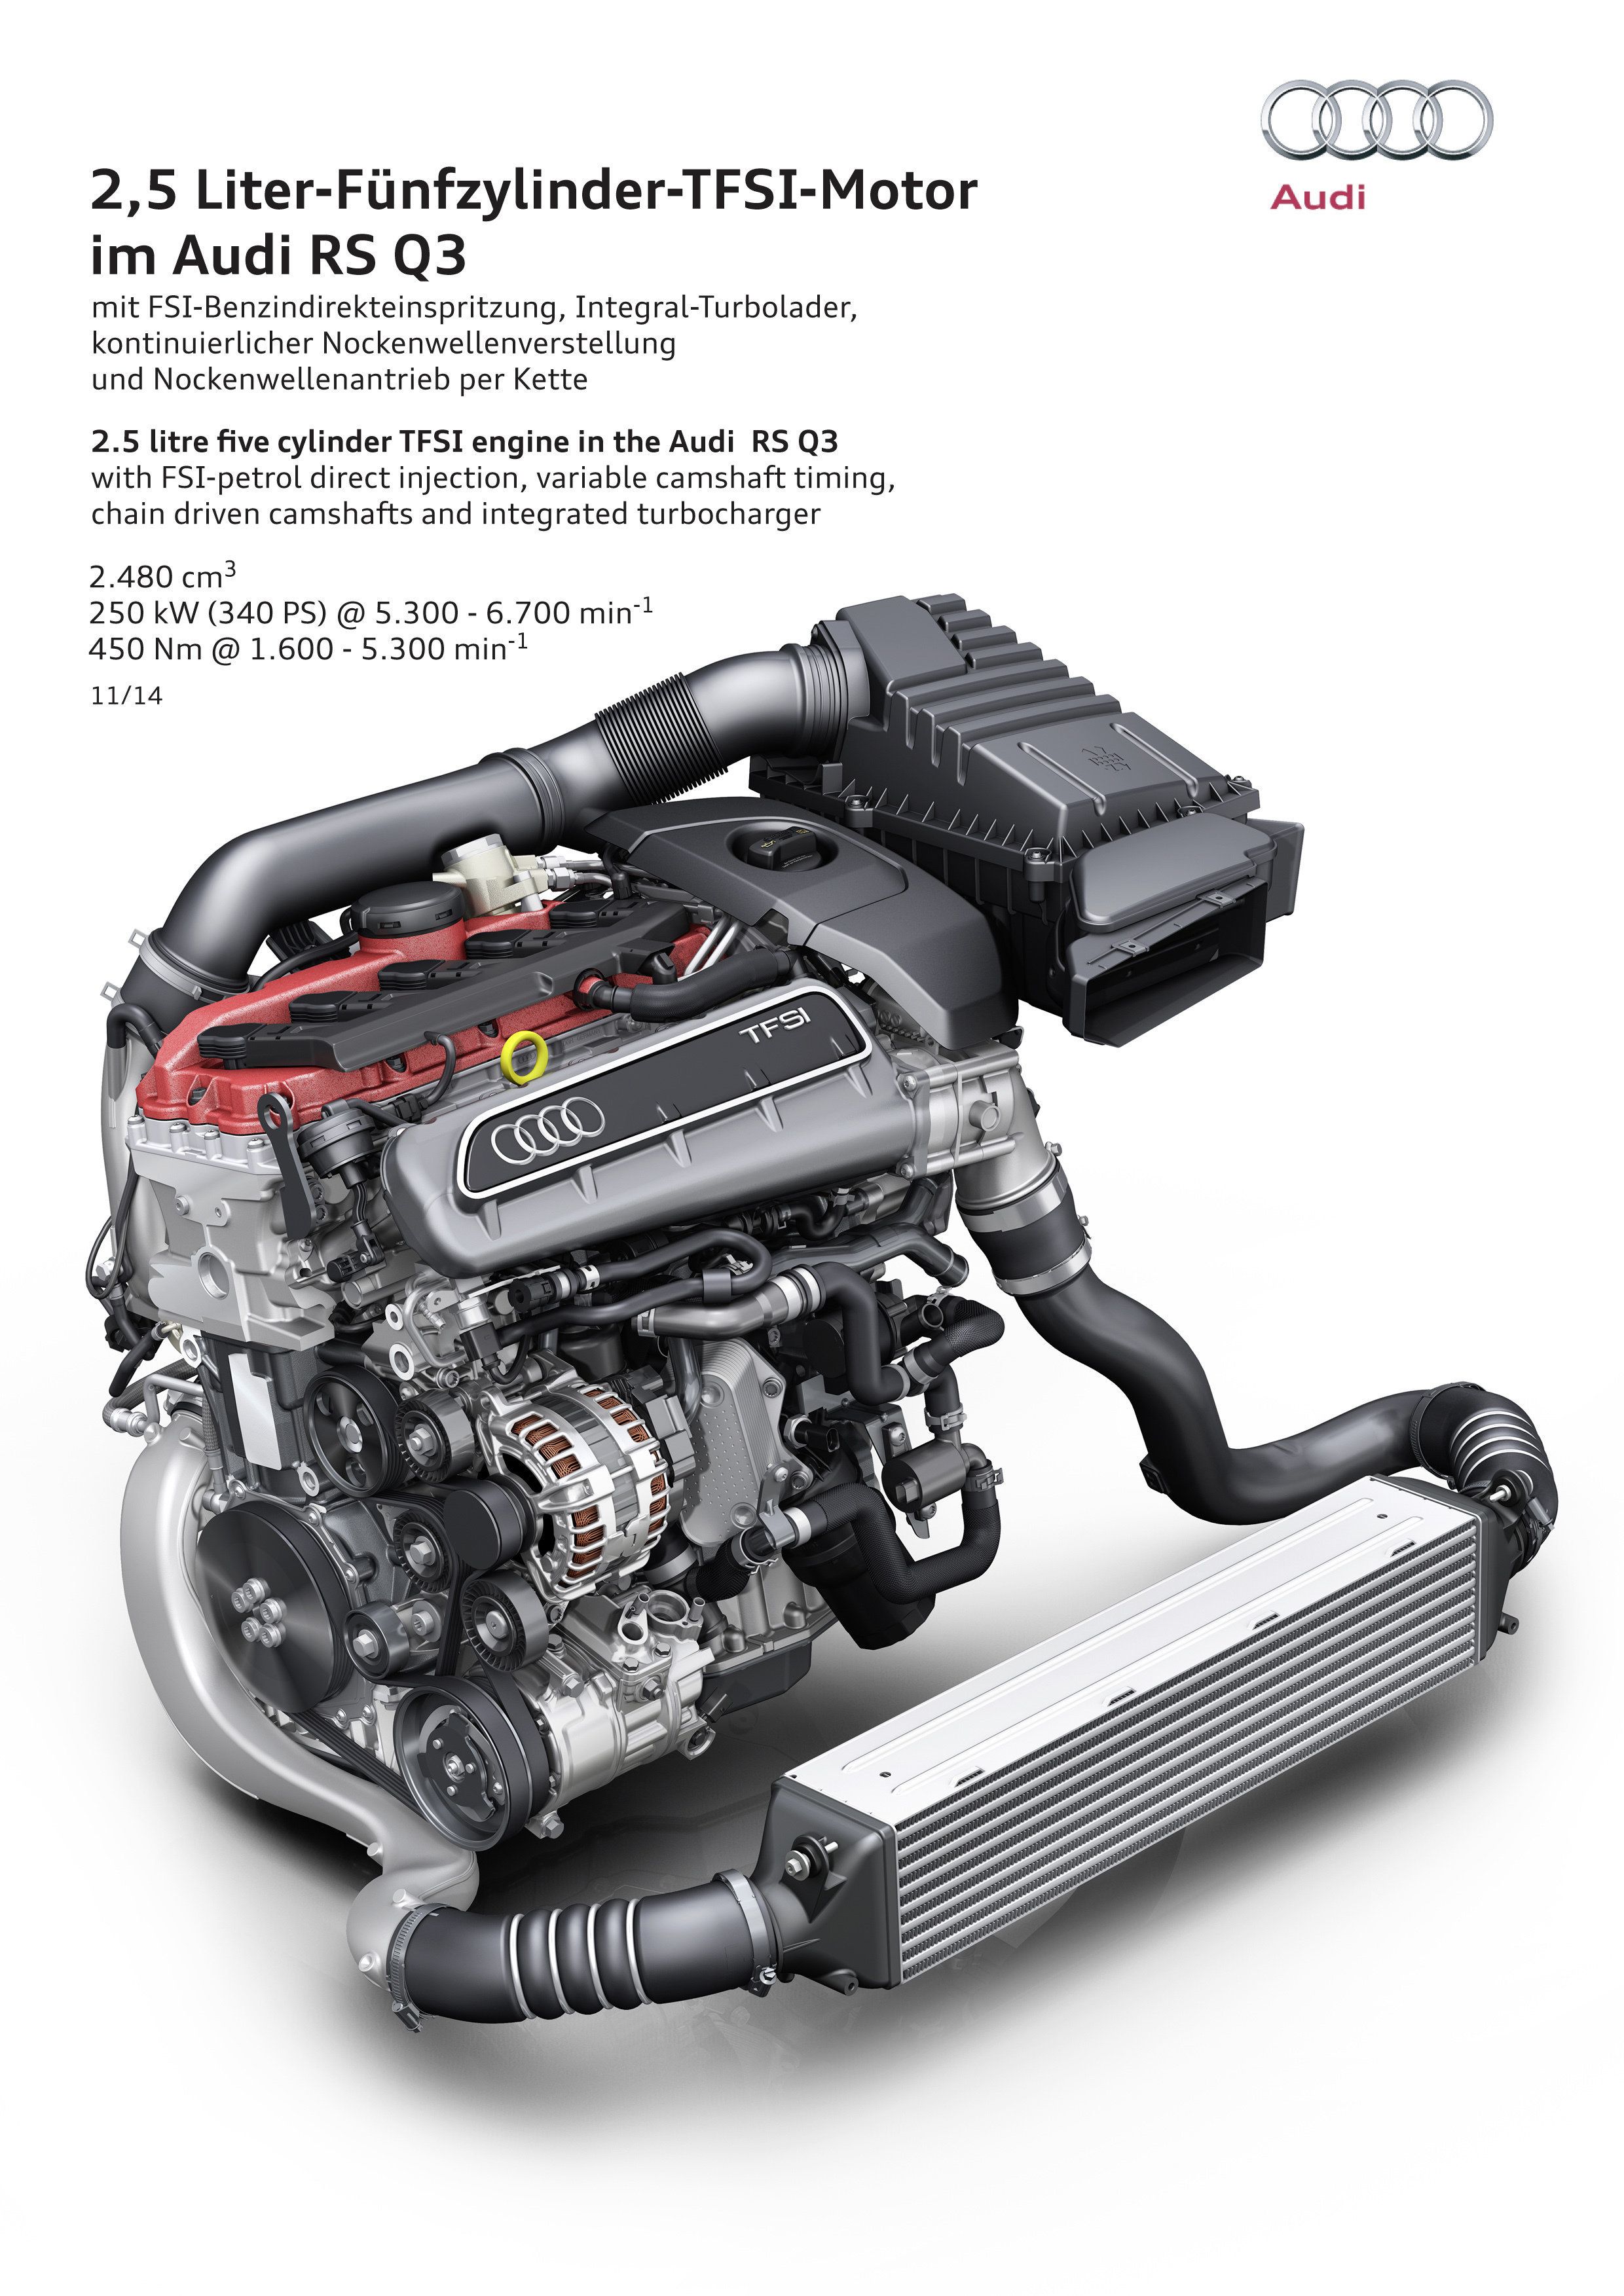 2.5 litre five cylinder TFSI engine